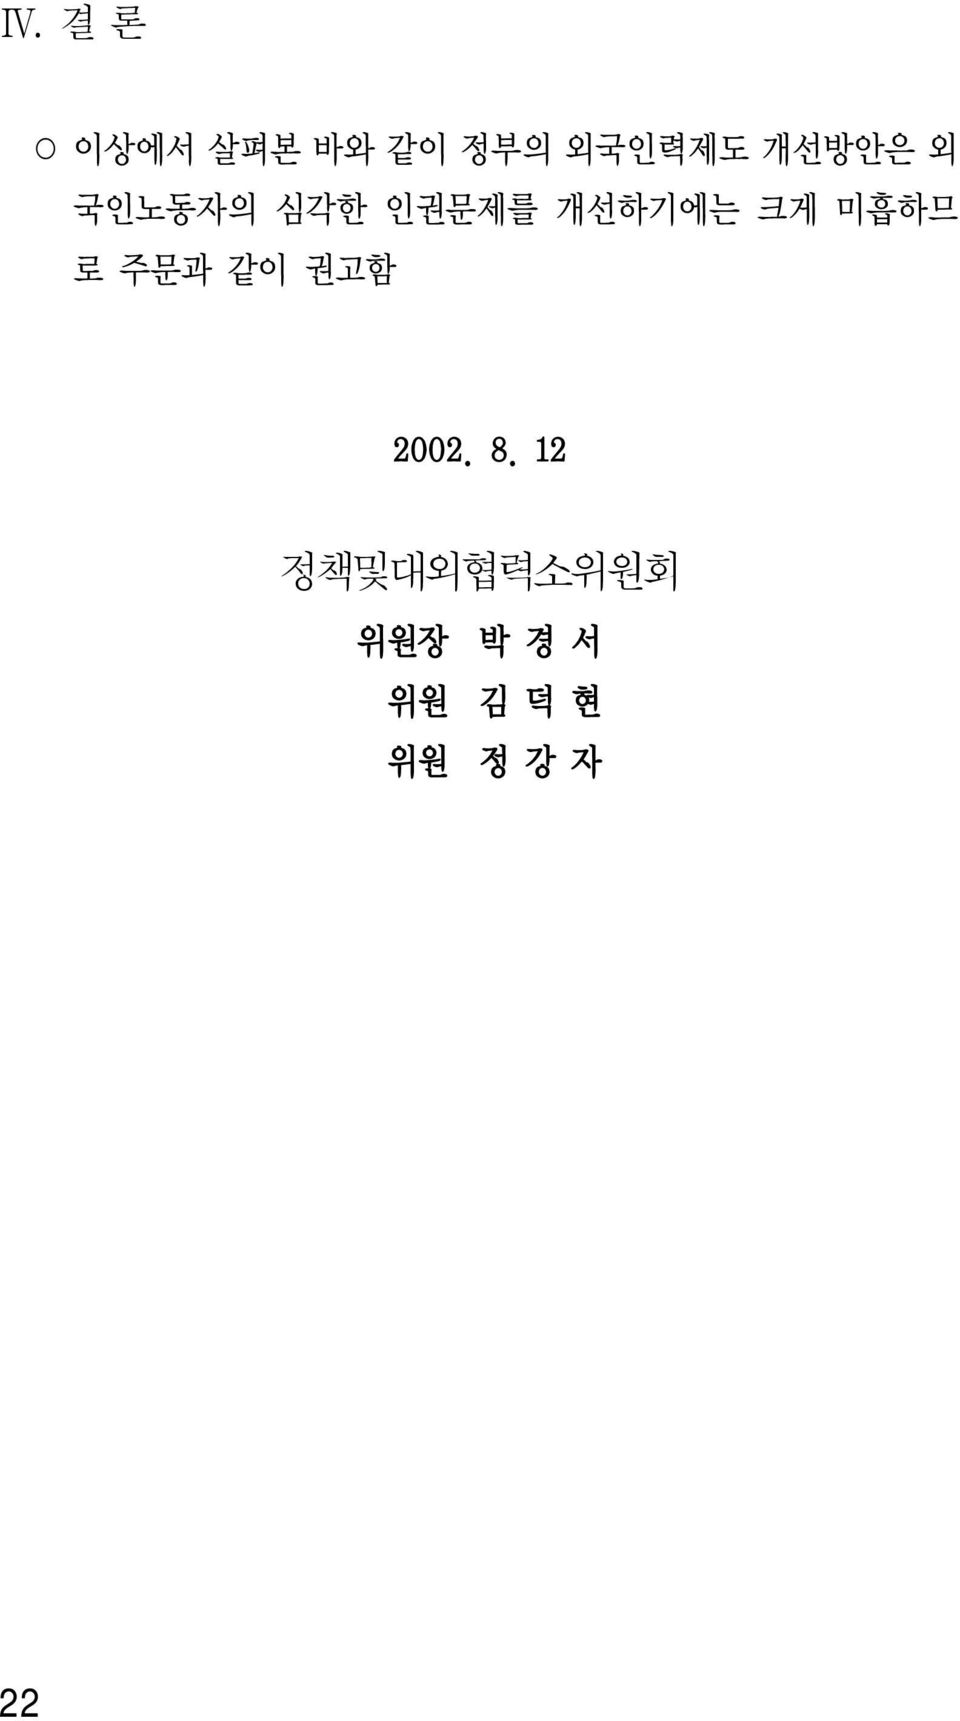 미흡하므 로 주문과 같이 권고함 2002. 8.